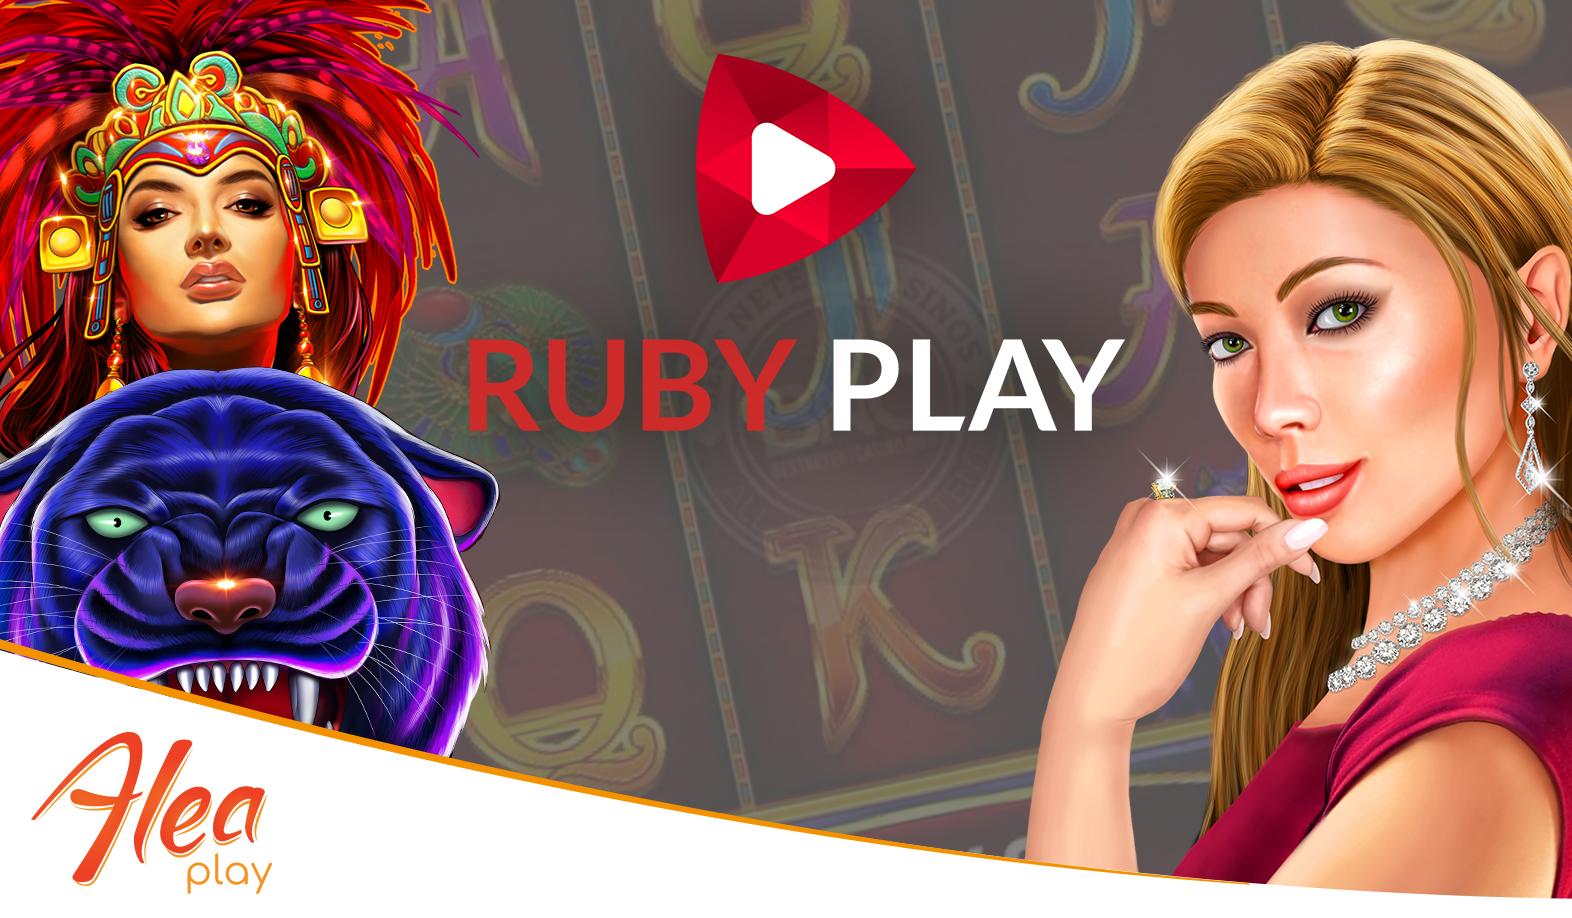 Alea Play is now live with Ruby Play | Alea.com